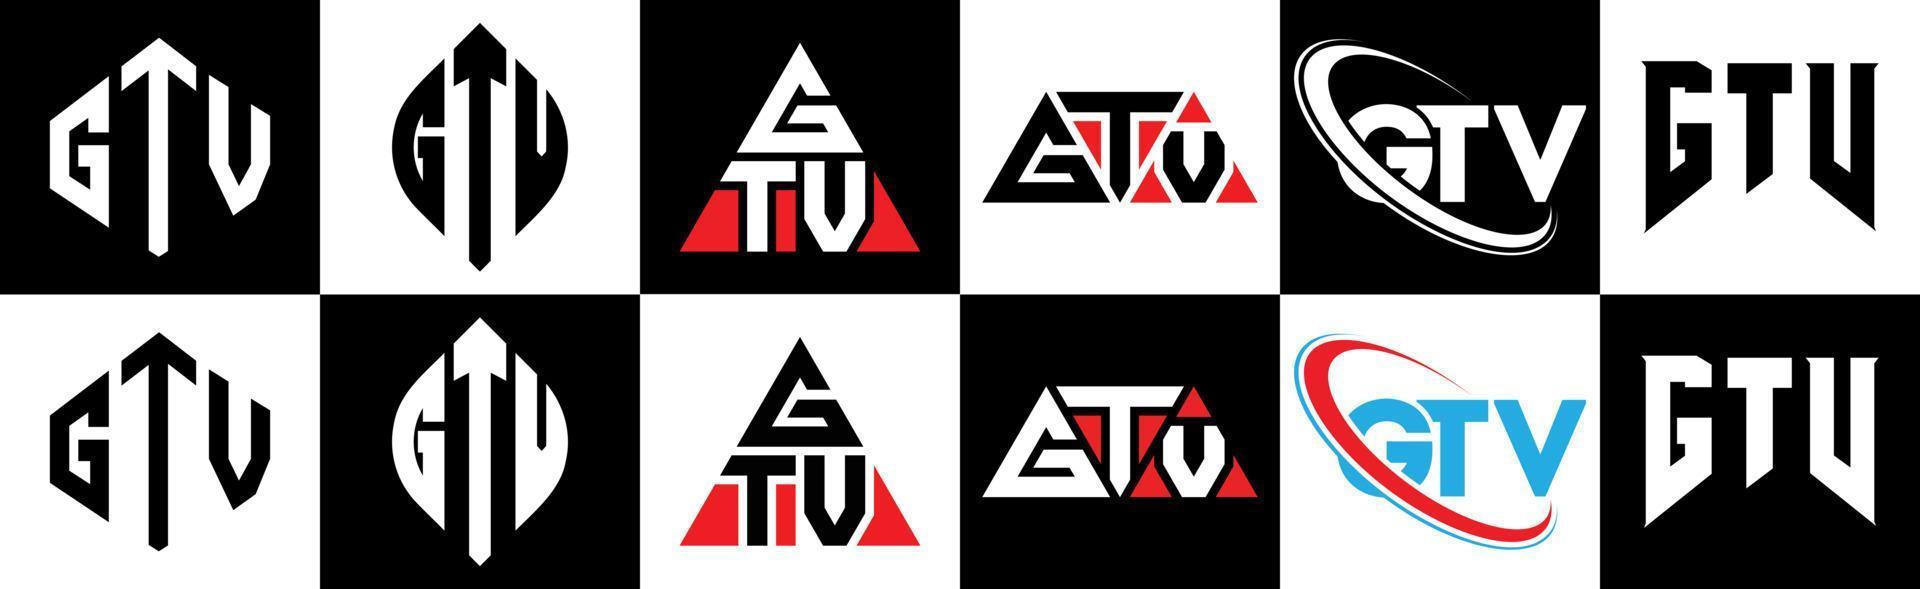 gtv-Buchstaben-Logo-Design in sechs Stilen. gtv polygon, kreis, dreieck, sechseck, flach und einfacher stil mit schwarz-weißem buchstabenlogo in einer zeichenfläche. gtv minimalistisches und klassisches logo vektor